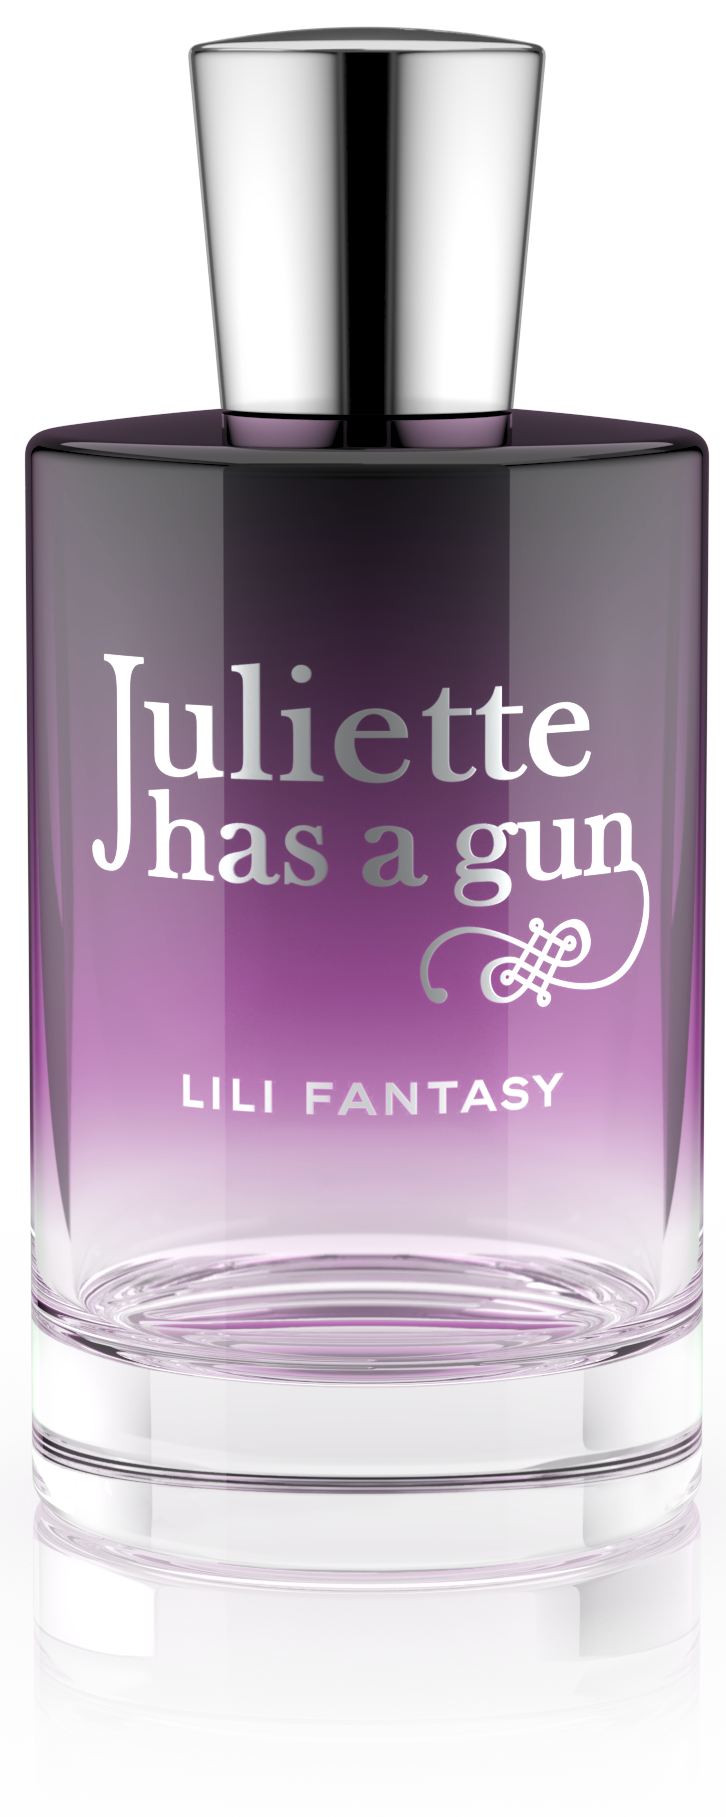 Juliette has a gun Lili Fantasy Eau de Parfum